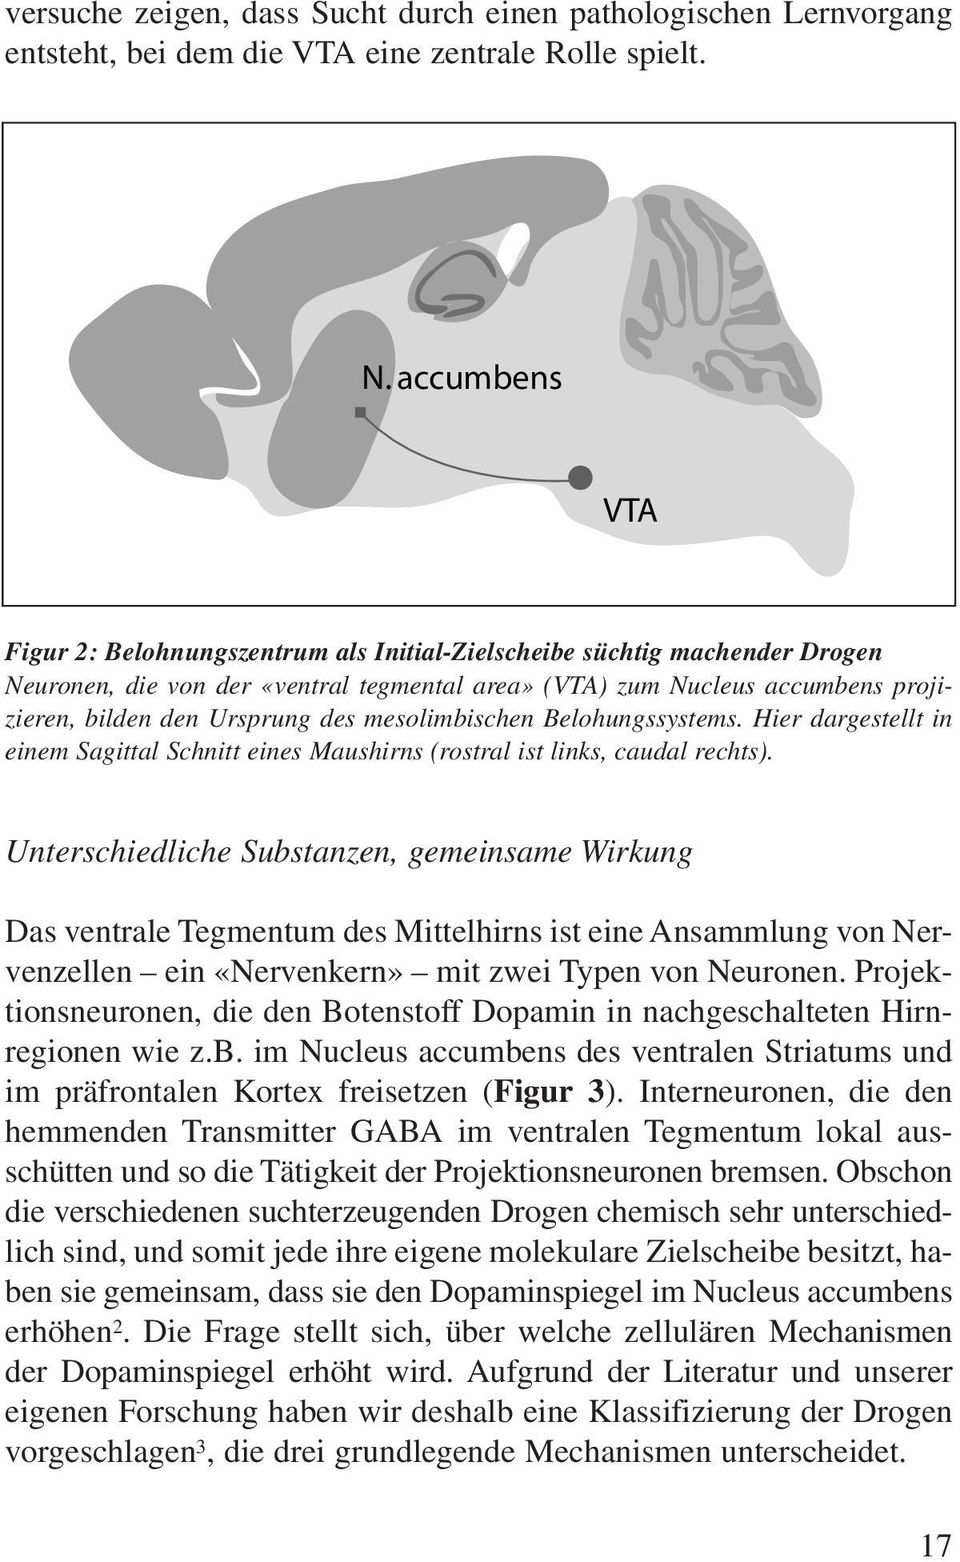 Ursprung des mesolimbischen Belohungssystems. Hier dargestellt in einem Sagittal Schnitt eines Maushirns (rostral ist links, caudal rechts).